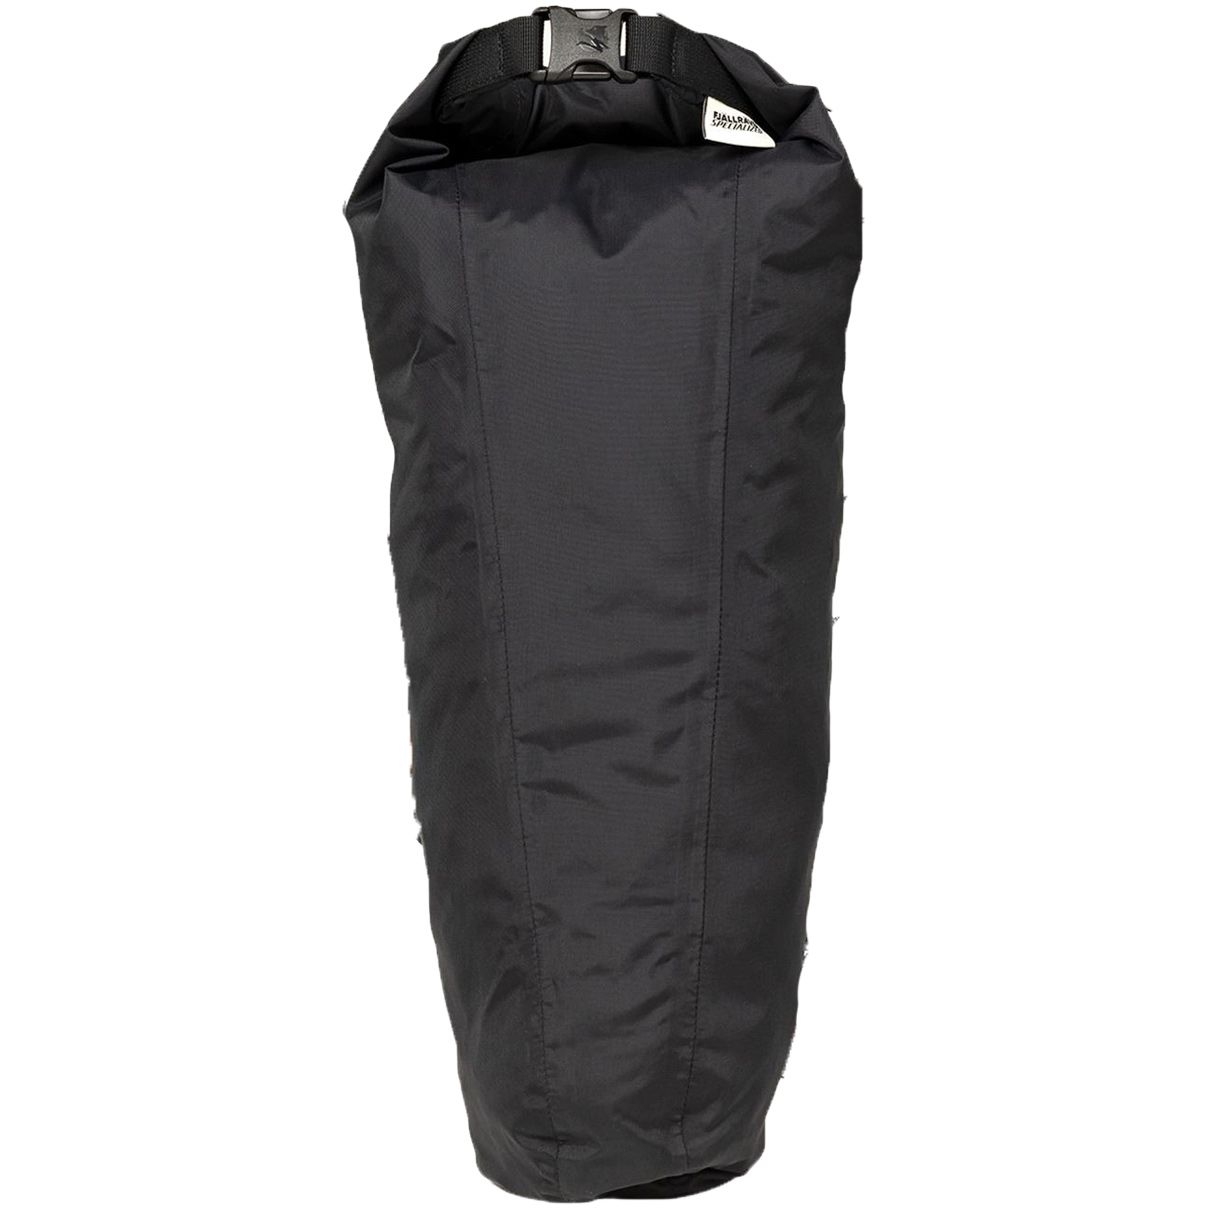 Produktbild von Specialized Fjällräven Seatbag Packsack 10L - schwarz